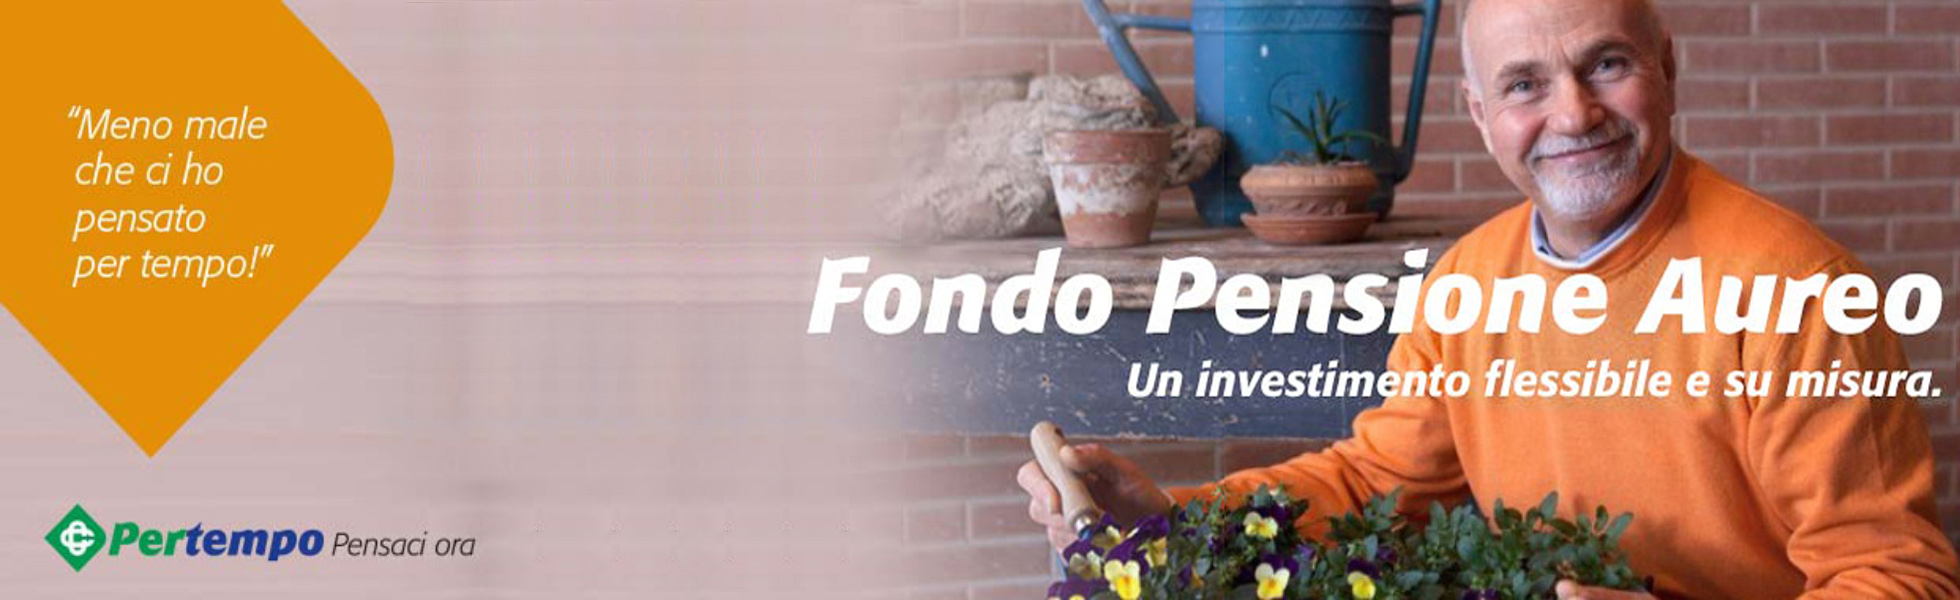 BCC Pesaro — Fondo Pensione